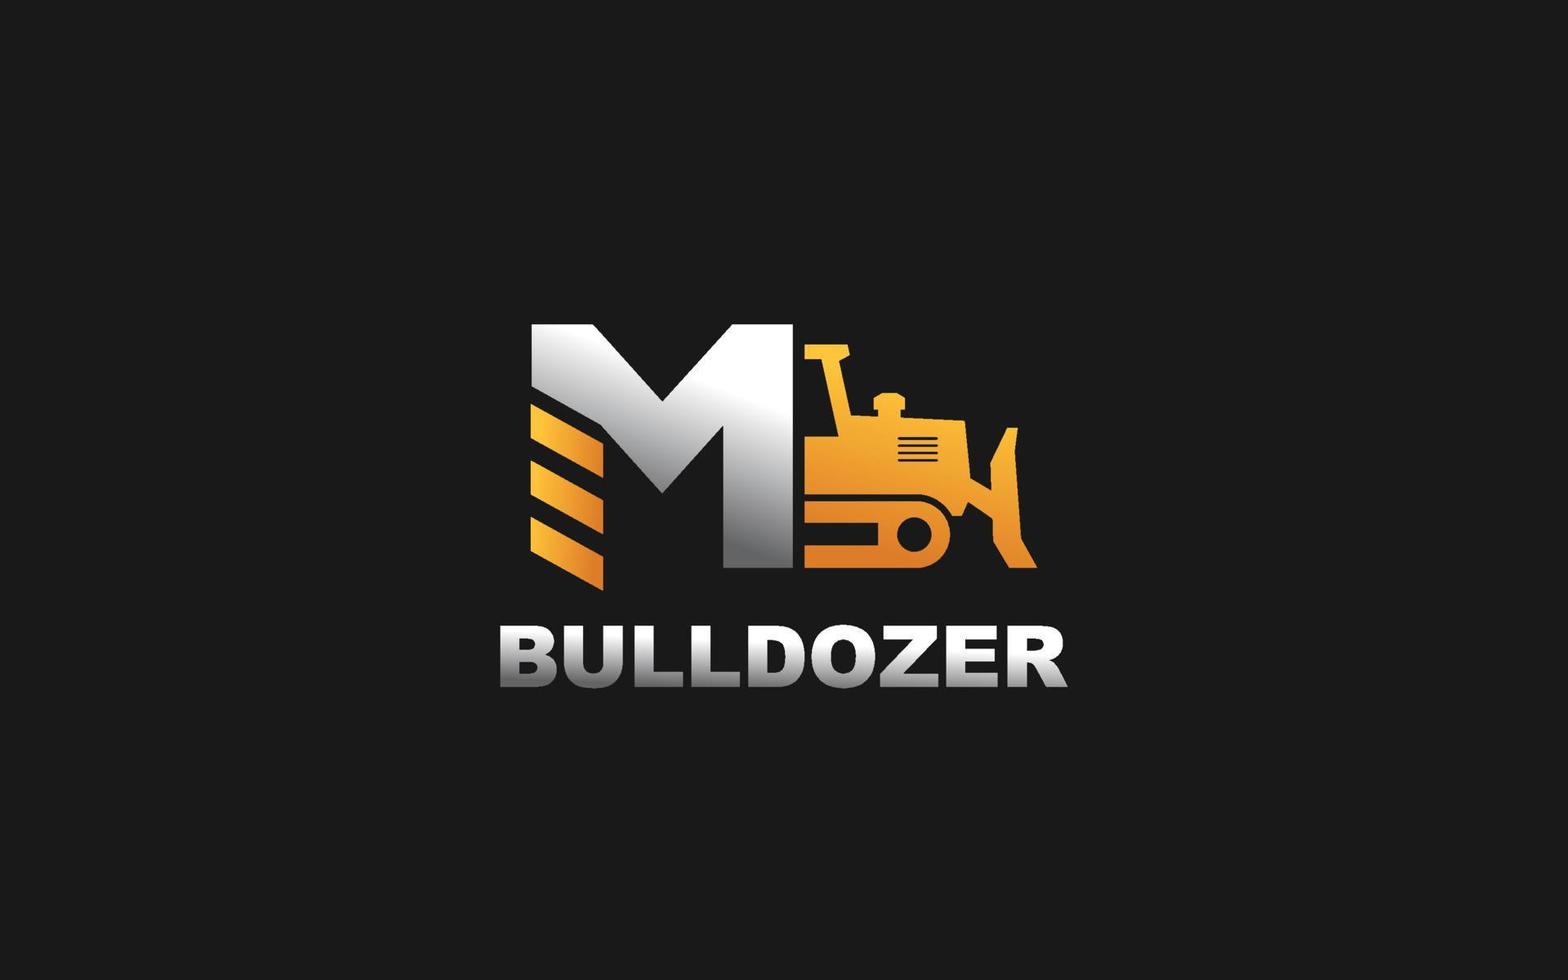 m logo bulldozer voor bouw bedrijf. zwaar uitrusting sjabloon vector illustratie voor uw merk.